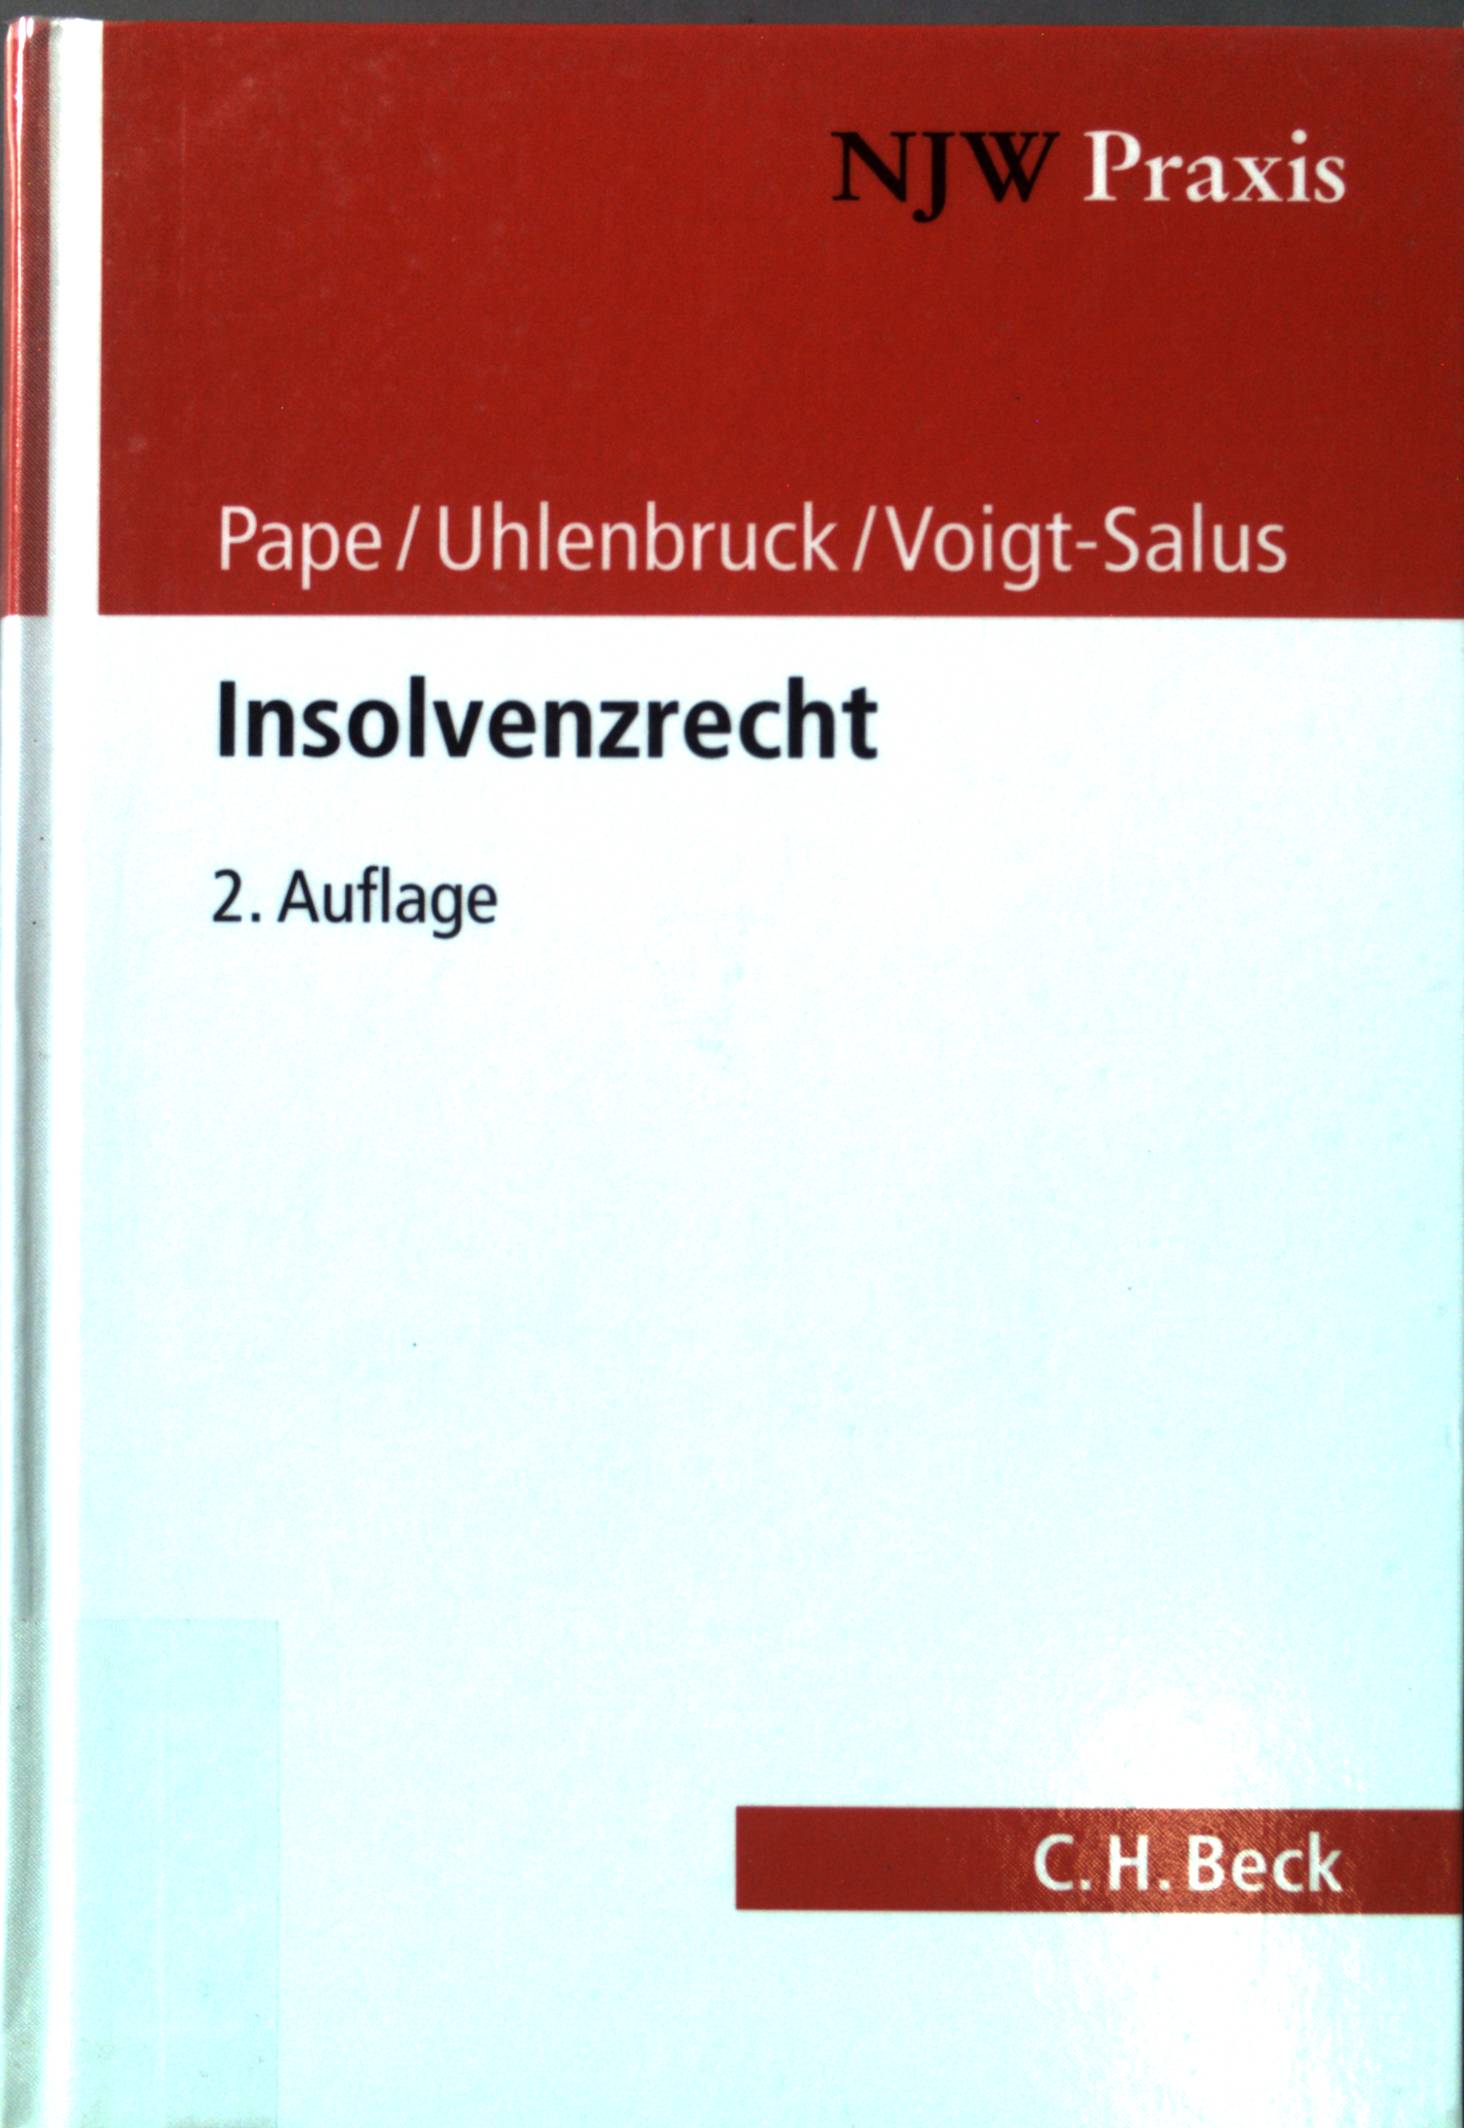 Insolvenzrecht. NJW Praxis ; Bd. 67 2., vollst. überarb. Aufl. - Pape, Gerhard, Wilhelm Uhlenbruck und Joachim Voigt-Salus